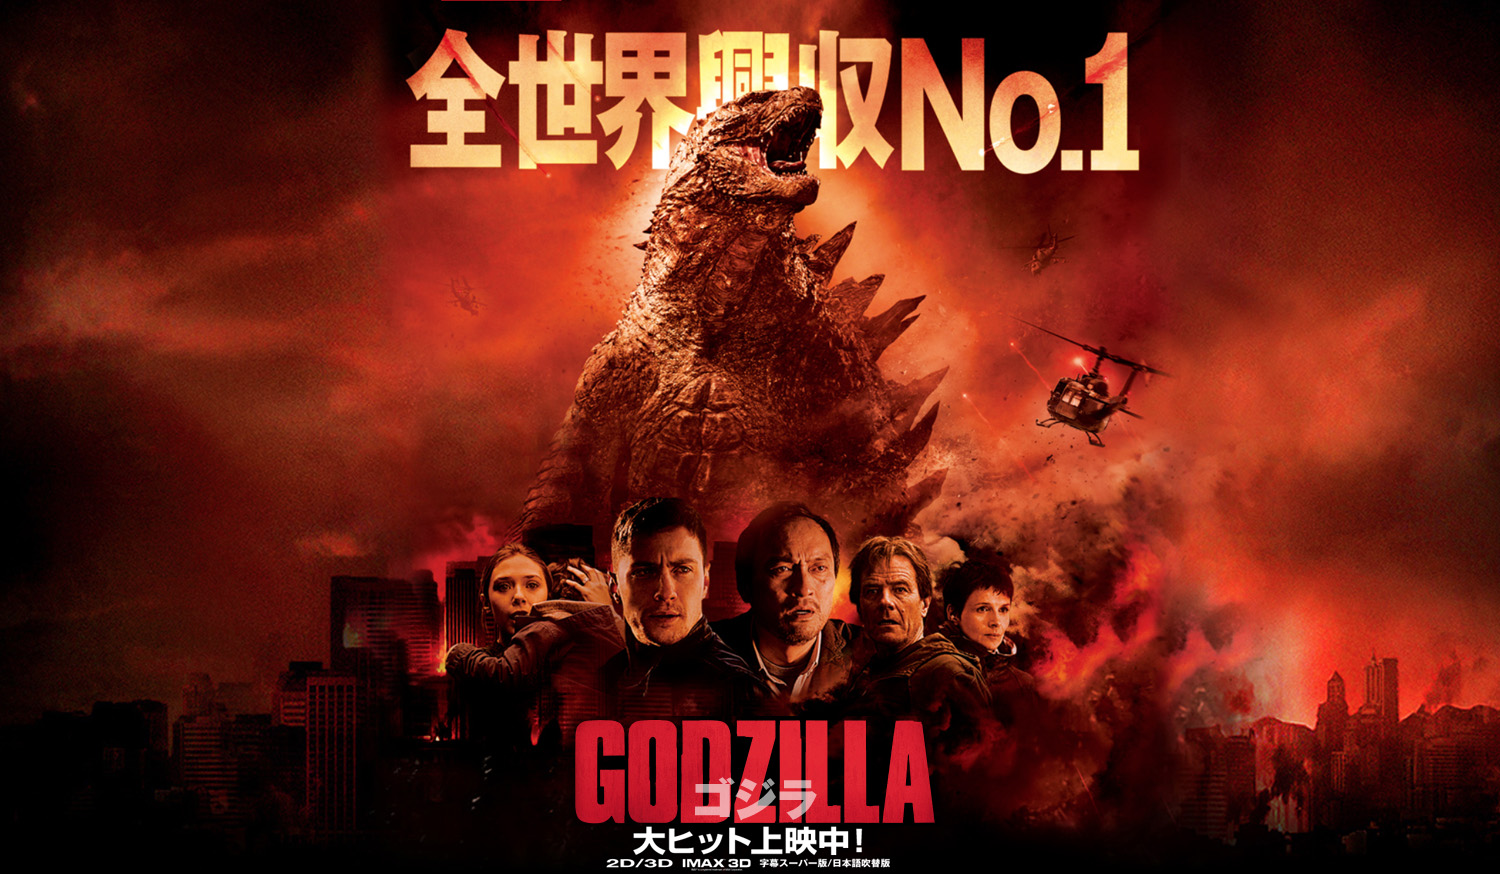 ネタバレ ハリウッド版 Godzilla ゴジラ 14 はなぜ物足りないのか 感想 解説 評価 映画だらけのオレンチ